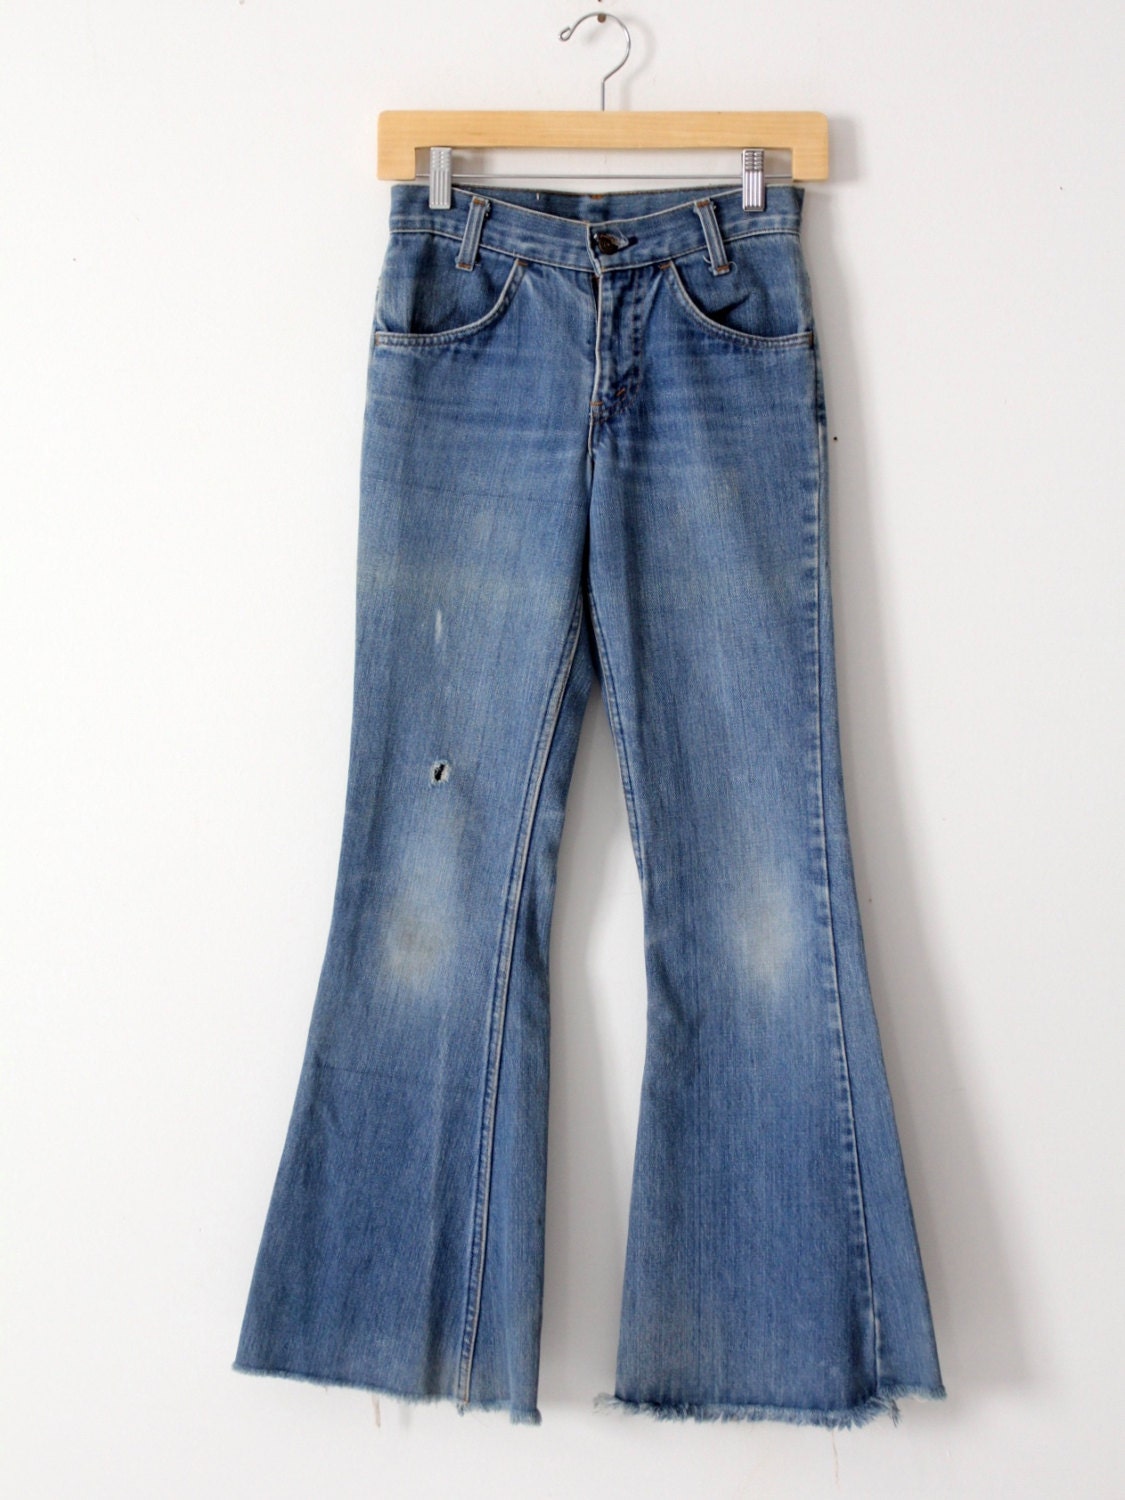 Levi's Vintage Jeans 1970s Denim Flares Bell Bottoms - Etsy